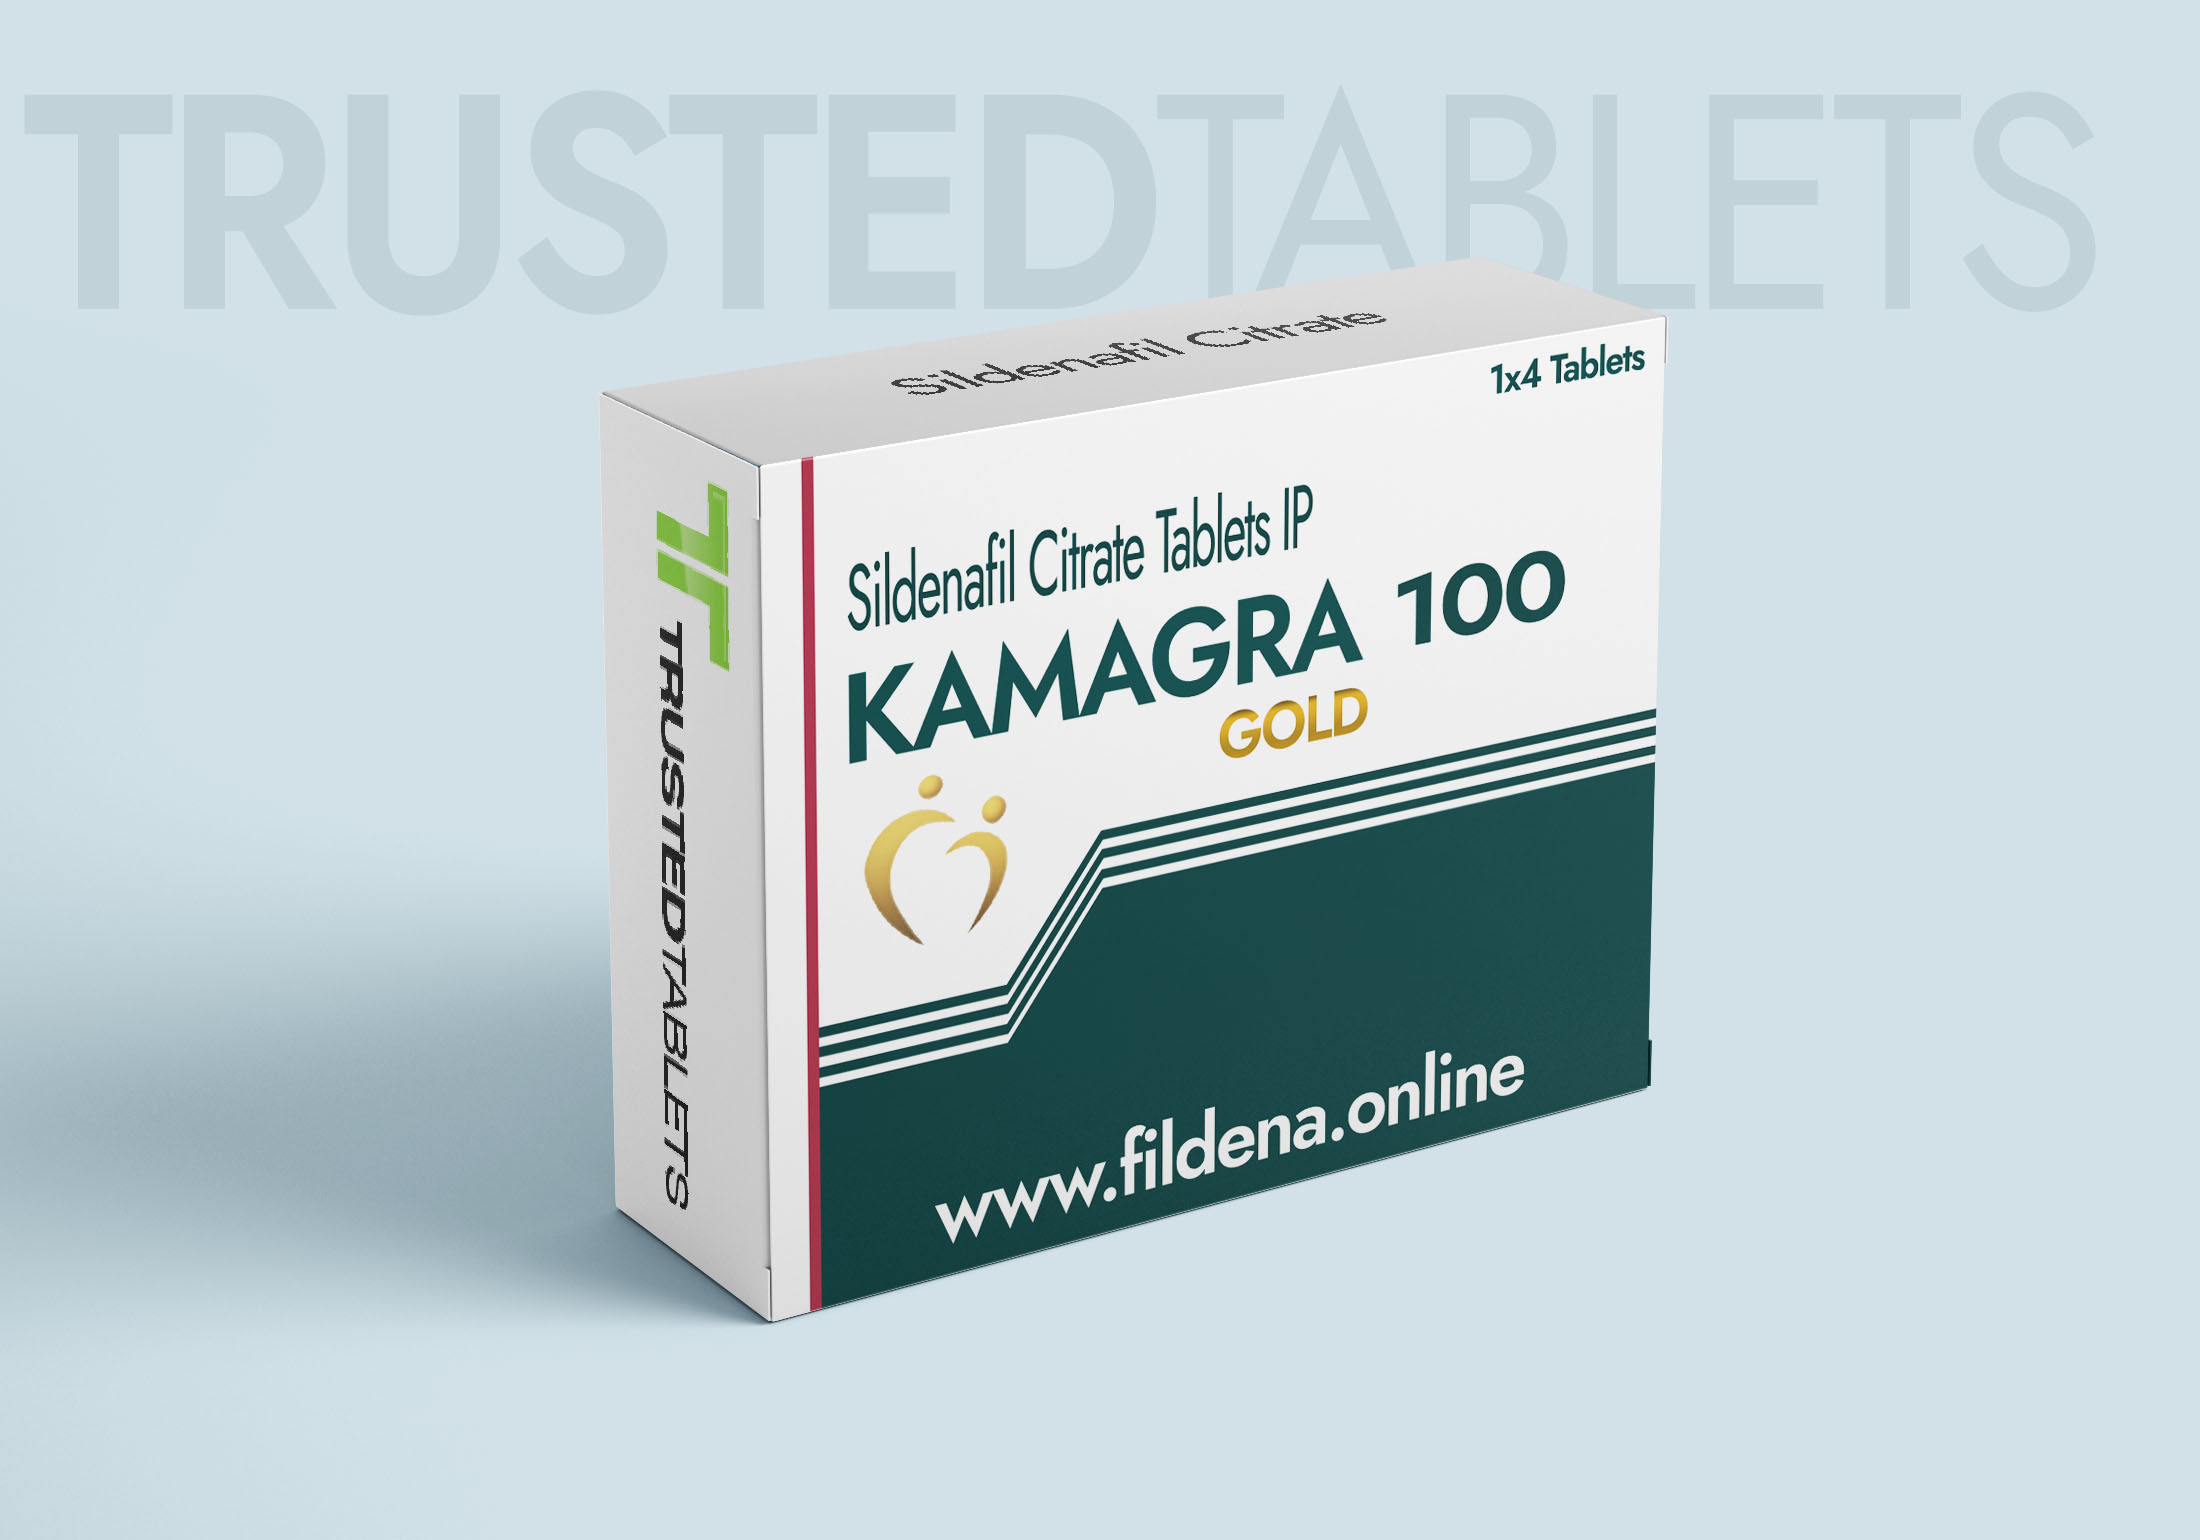 Kamagra Gold TrustedTablets